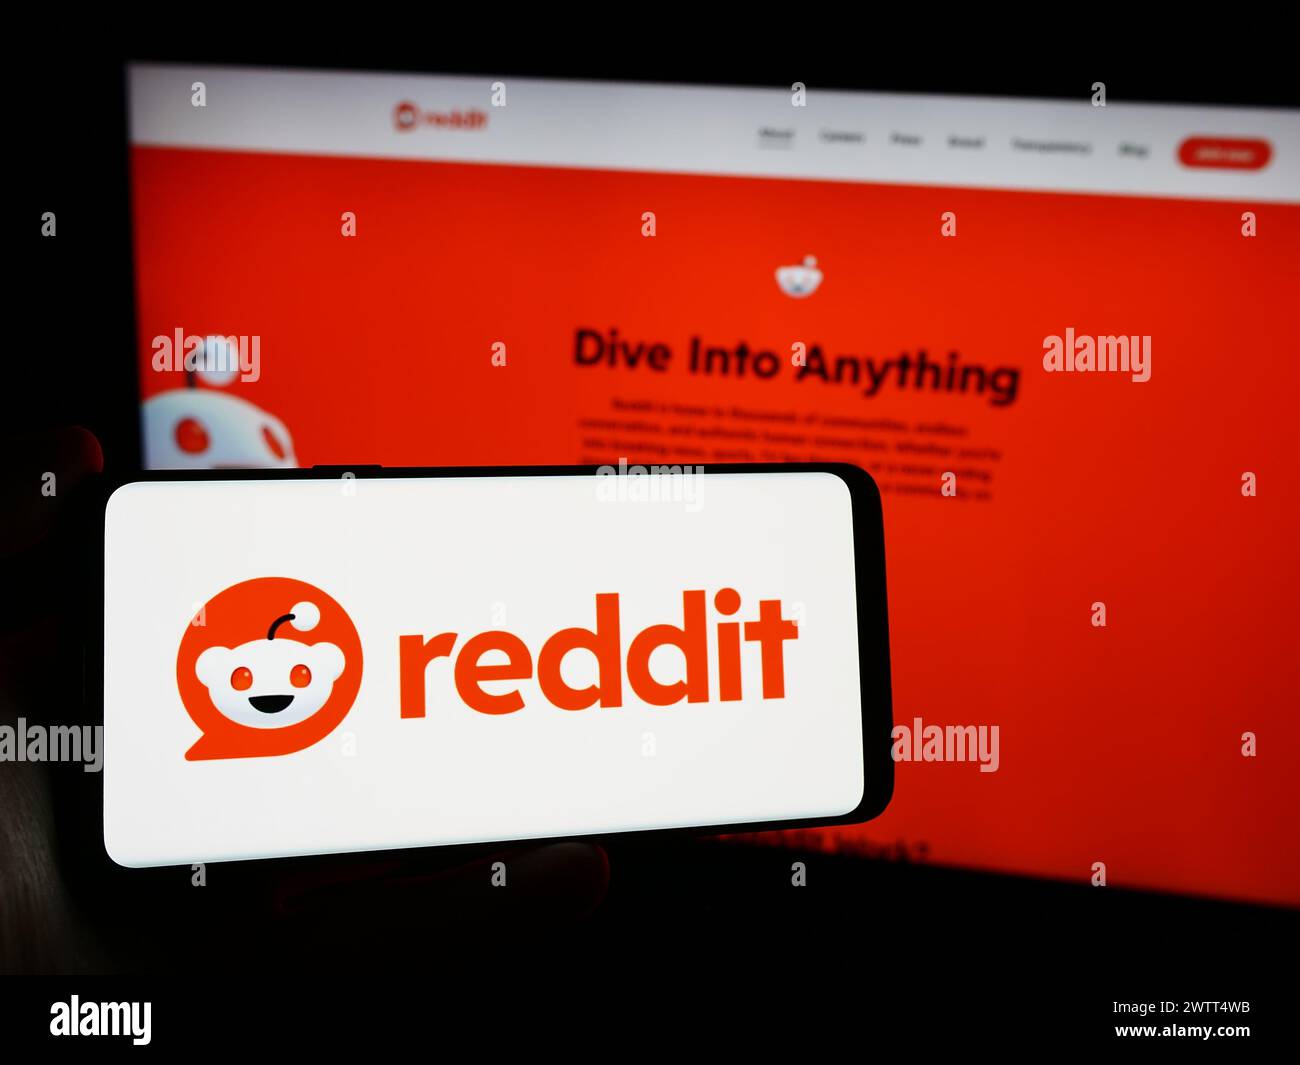 Persona che detiene un telefono cellulare con il logo della società americana di social media Reddit Inc. Di fronte alla pagina Web aziendale. Mettere a fuoco il display del telefono. Foto Stock